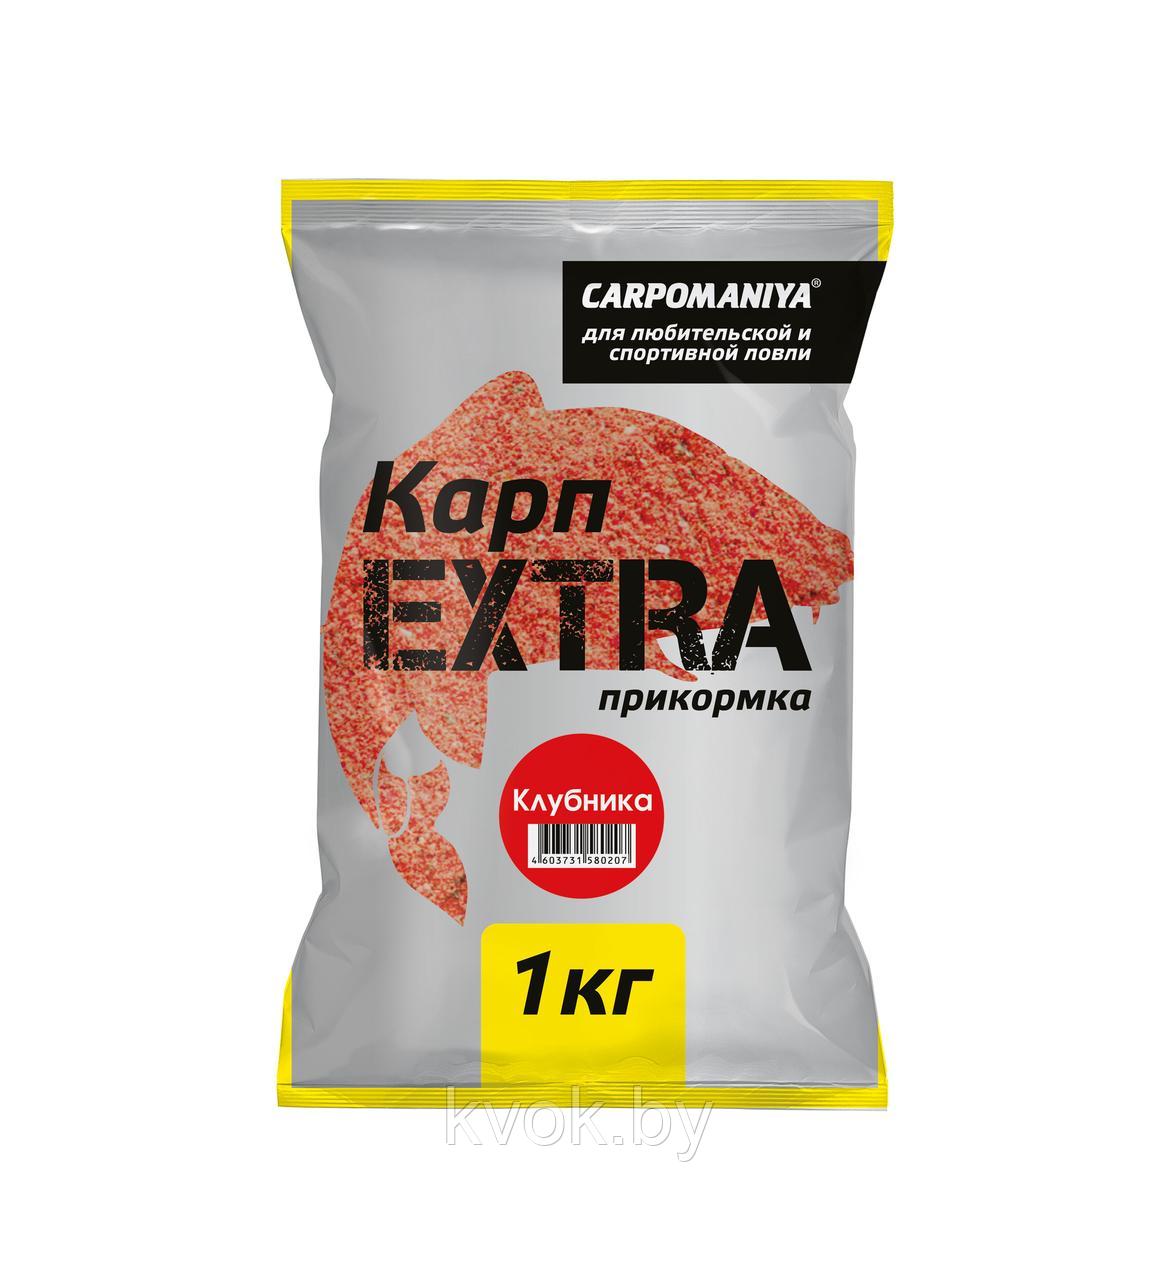 Прикормка Carpomaniya "Карп Extra" жмых кукурузный клубника, 1 кг